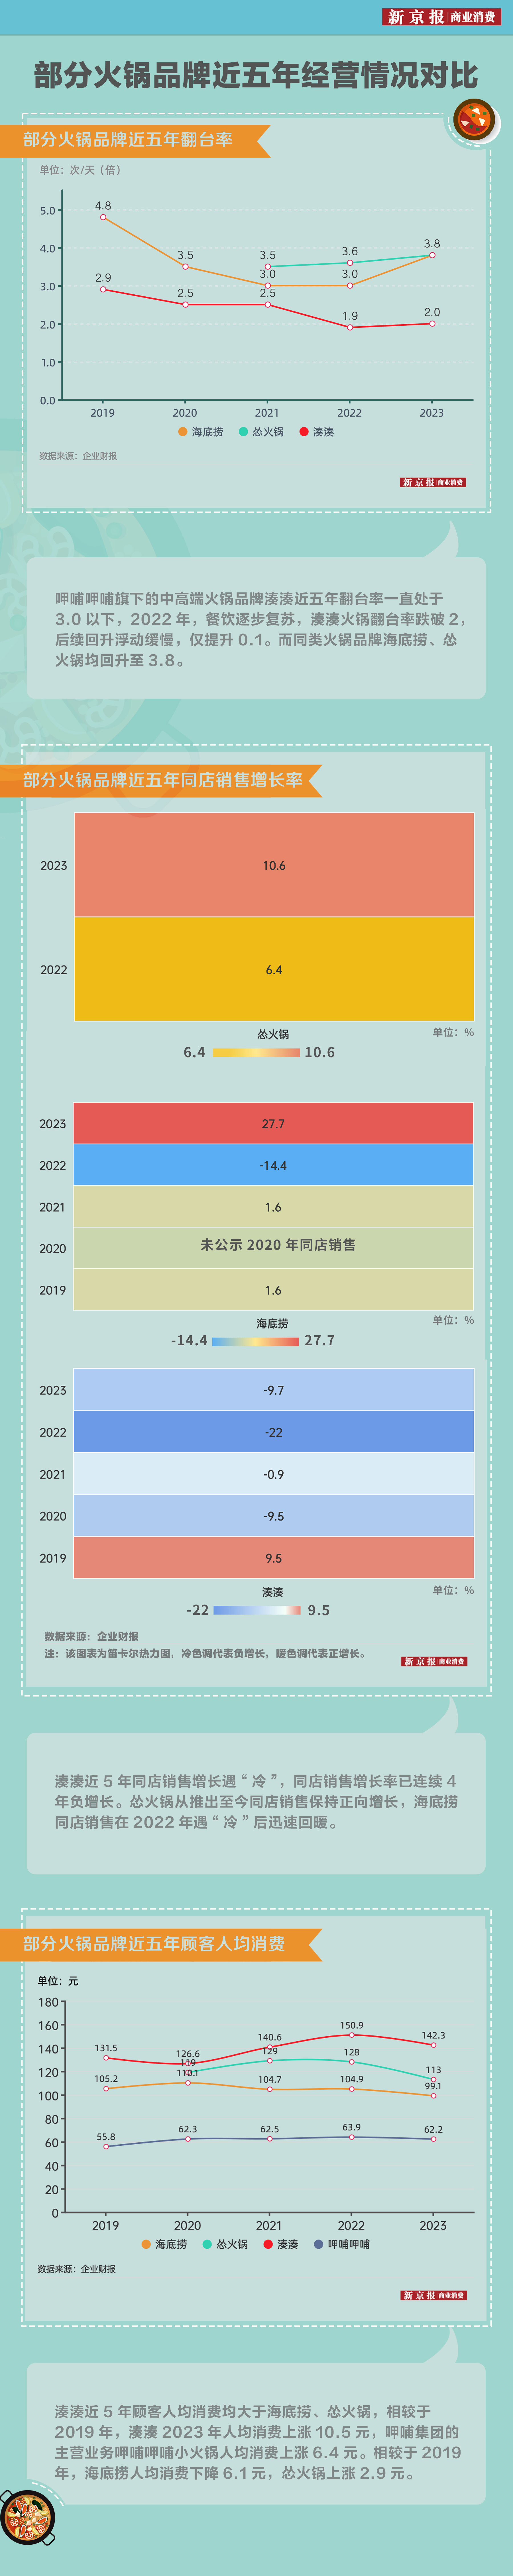 湊湊、海底捞、怂火锅等火锅品牌近五年经营情况对比。新京报记者 于桂桂 制图